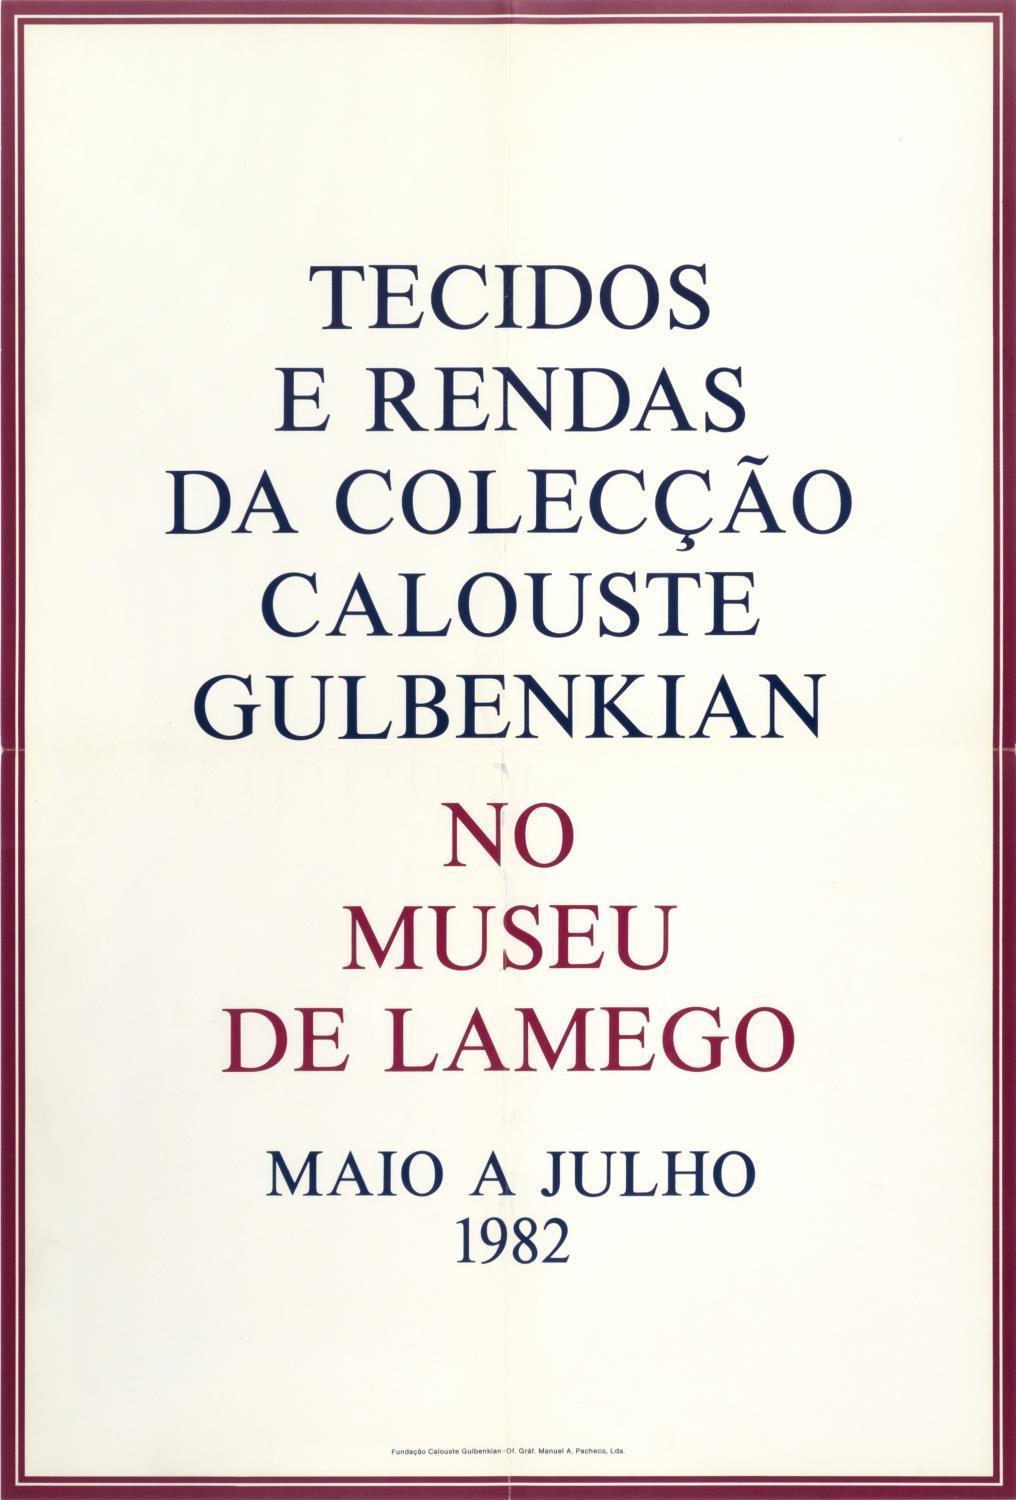 Tecidos e Rendas da Colecção Gulbenkian